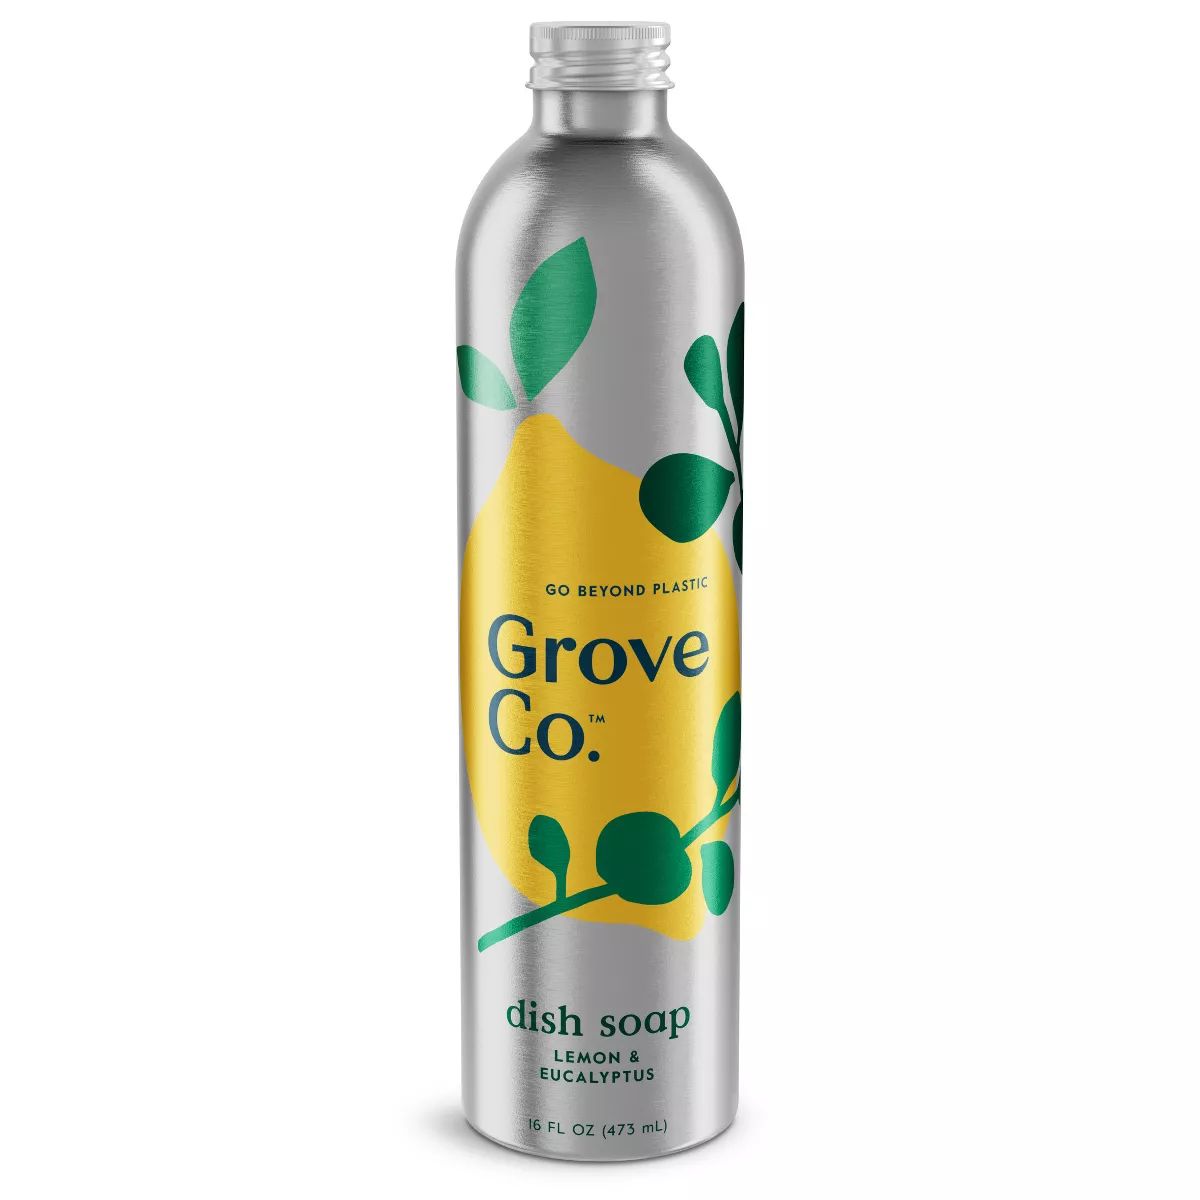 Grove Co. Lemon & Eucalyptus Ultimate Dish Soap Refill in Aluminum Bottle - 16 fl oz | Target